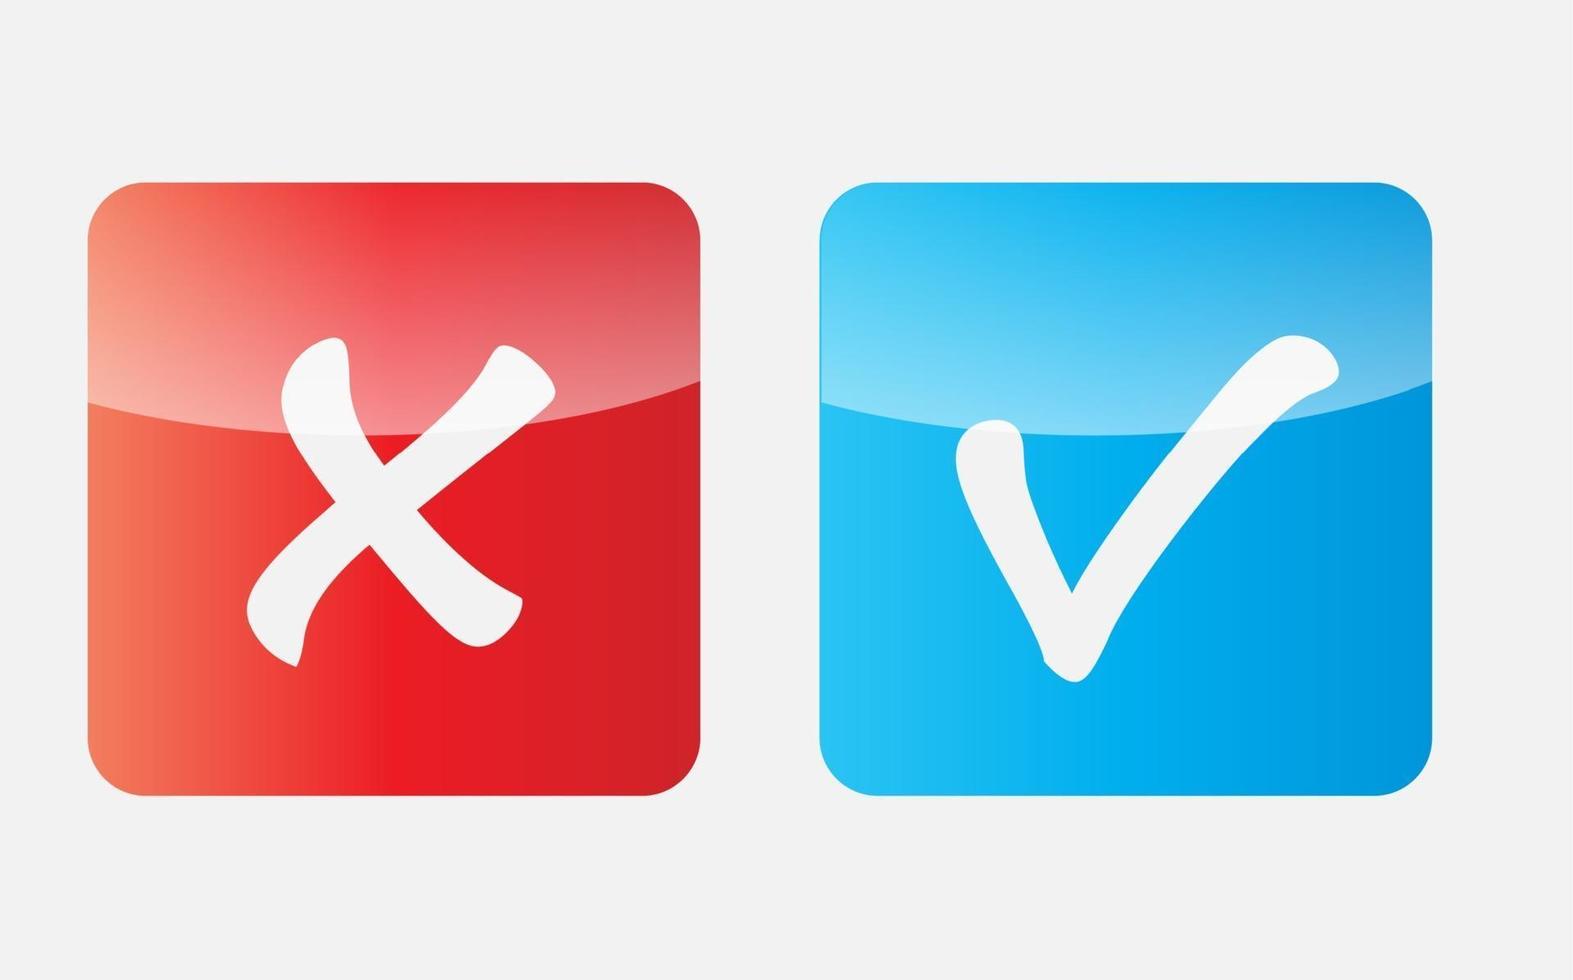 icone vettoriali con segno di spunta rosso e blu